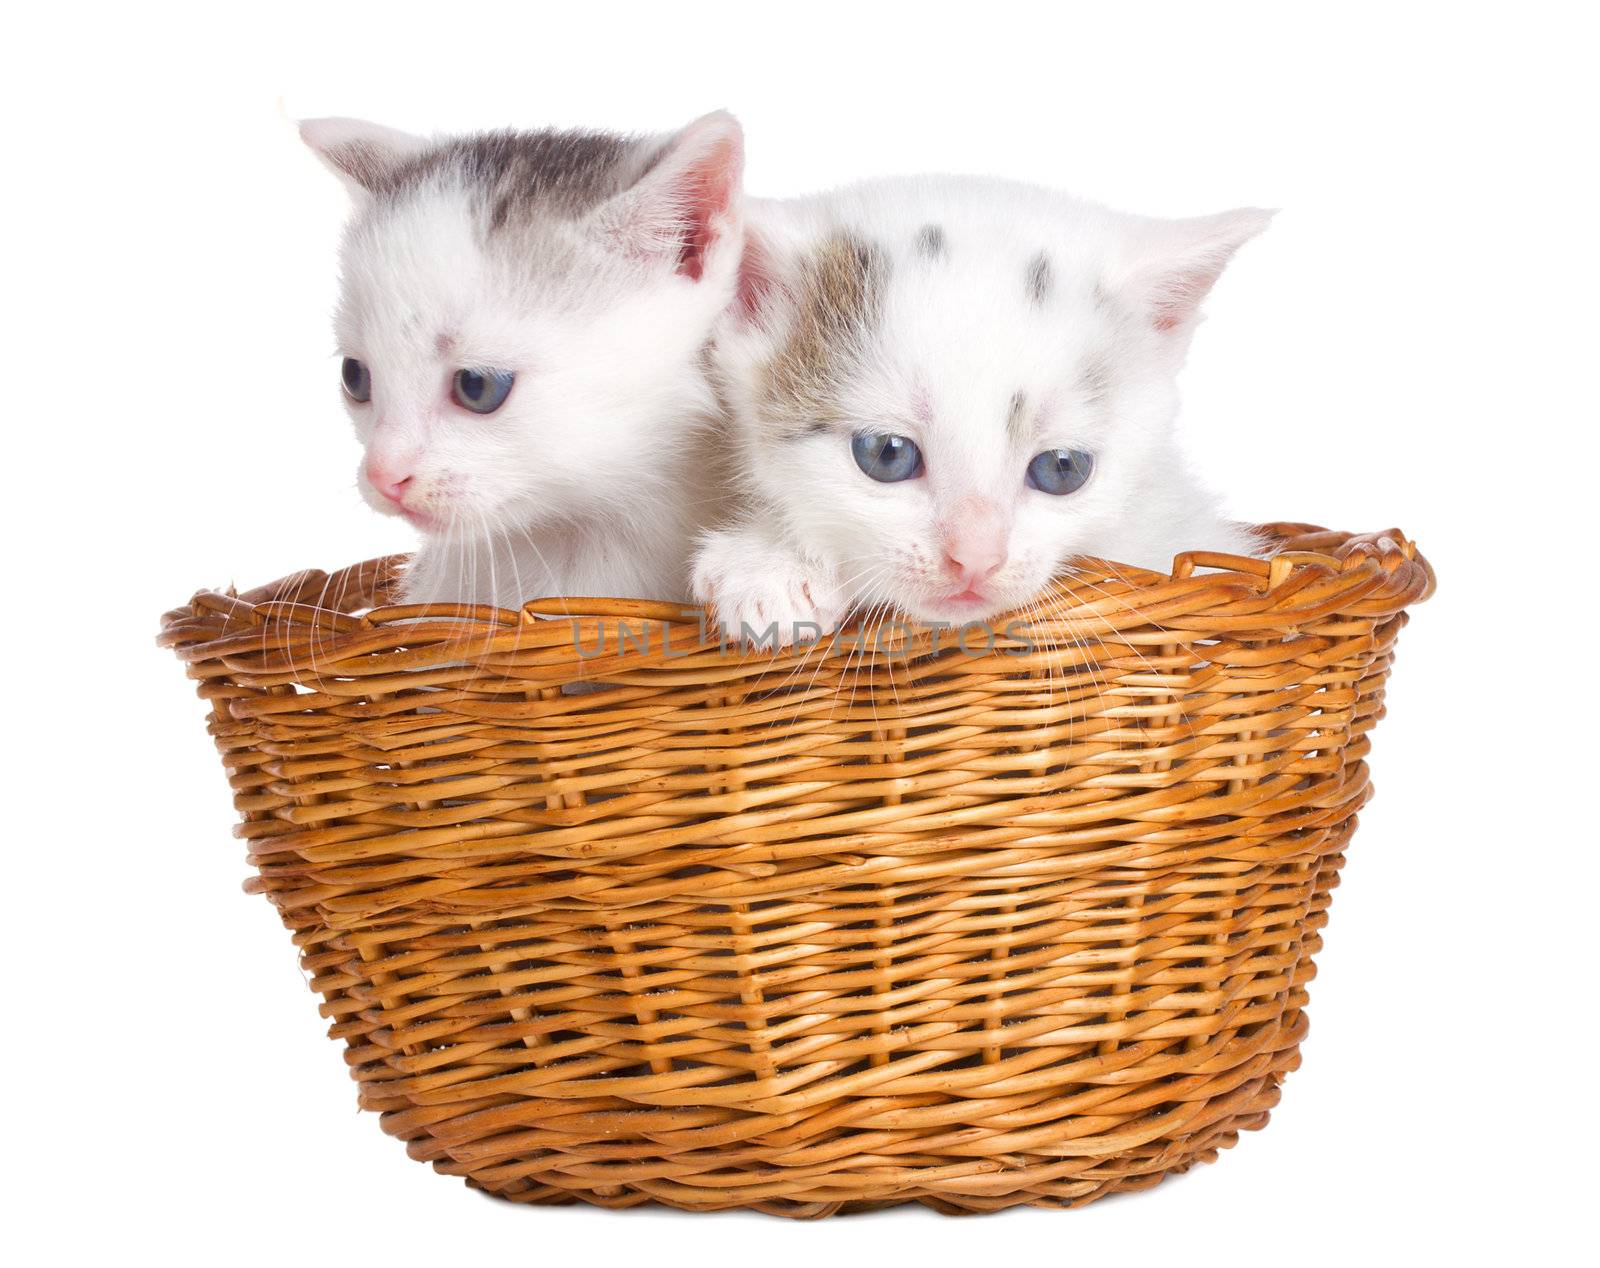 two kittens sitting in basket by Alekcey